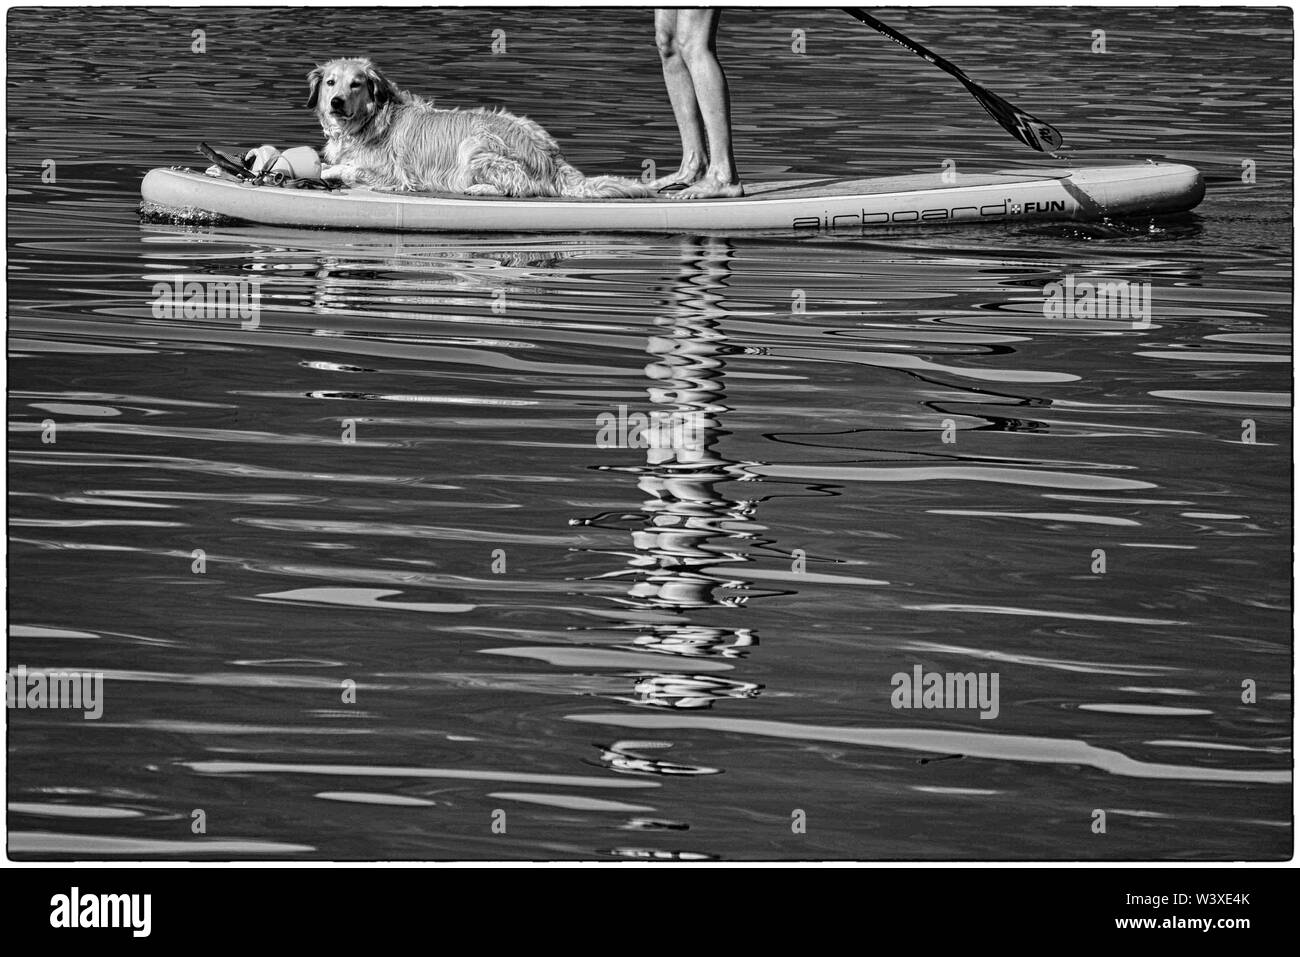 Schwarze und weiße Schuß eines nassen Hund auf einem SUP Board. Paddler nur sichtbar, von den Knien abwärts, Teil der Paddel und Reflexion auf dem Wasser Stockfoto